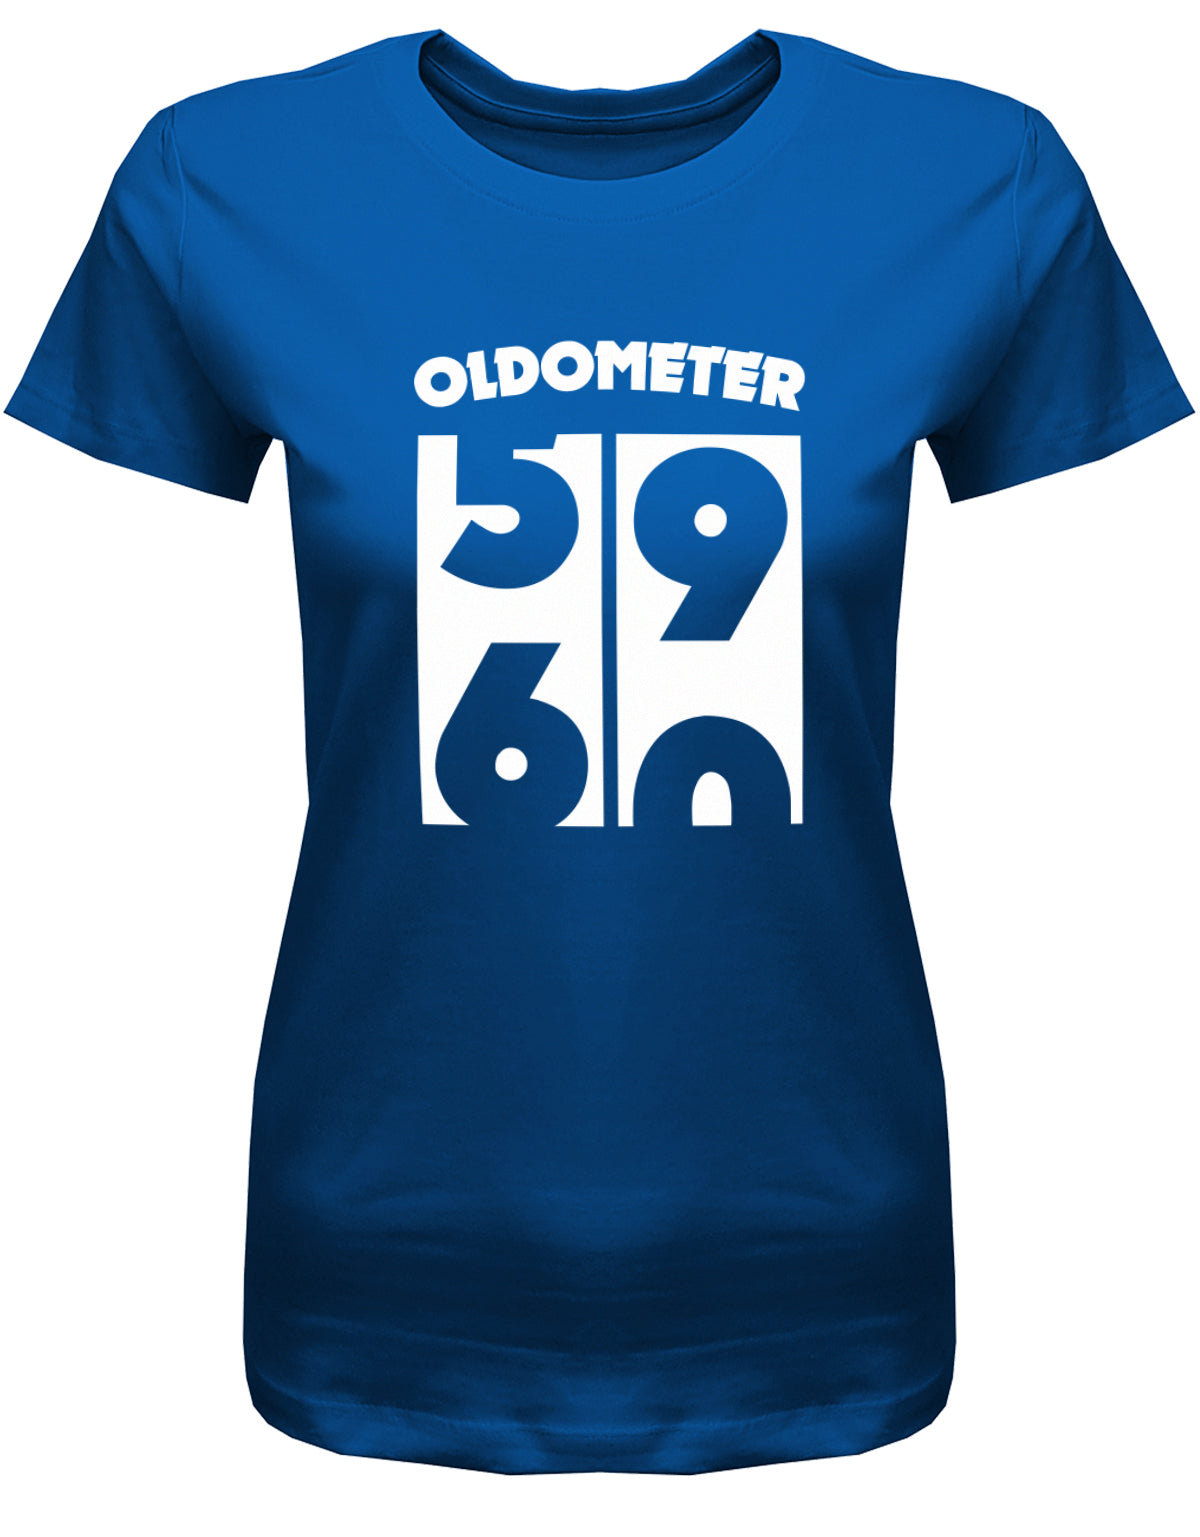 Lustiges T-Shirt zum 60 Geburtstag für die Frau Bedruckt mit Oldometer Wechsel von 59 zu 60 Jahren. Royalblau